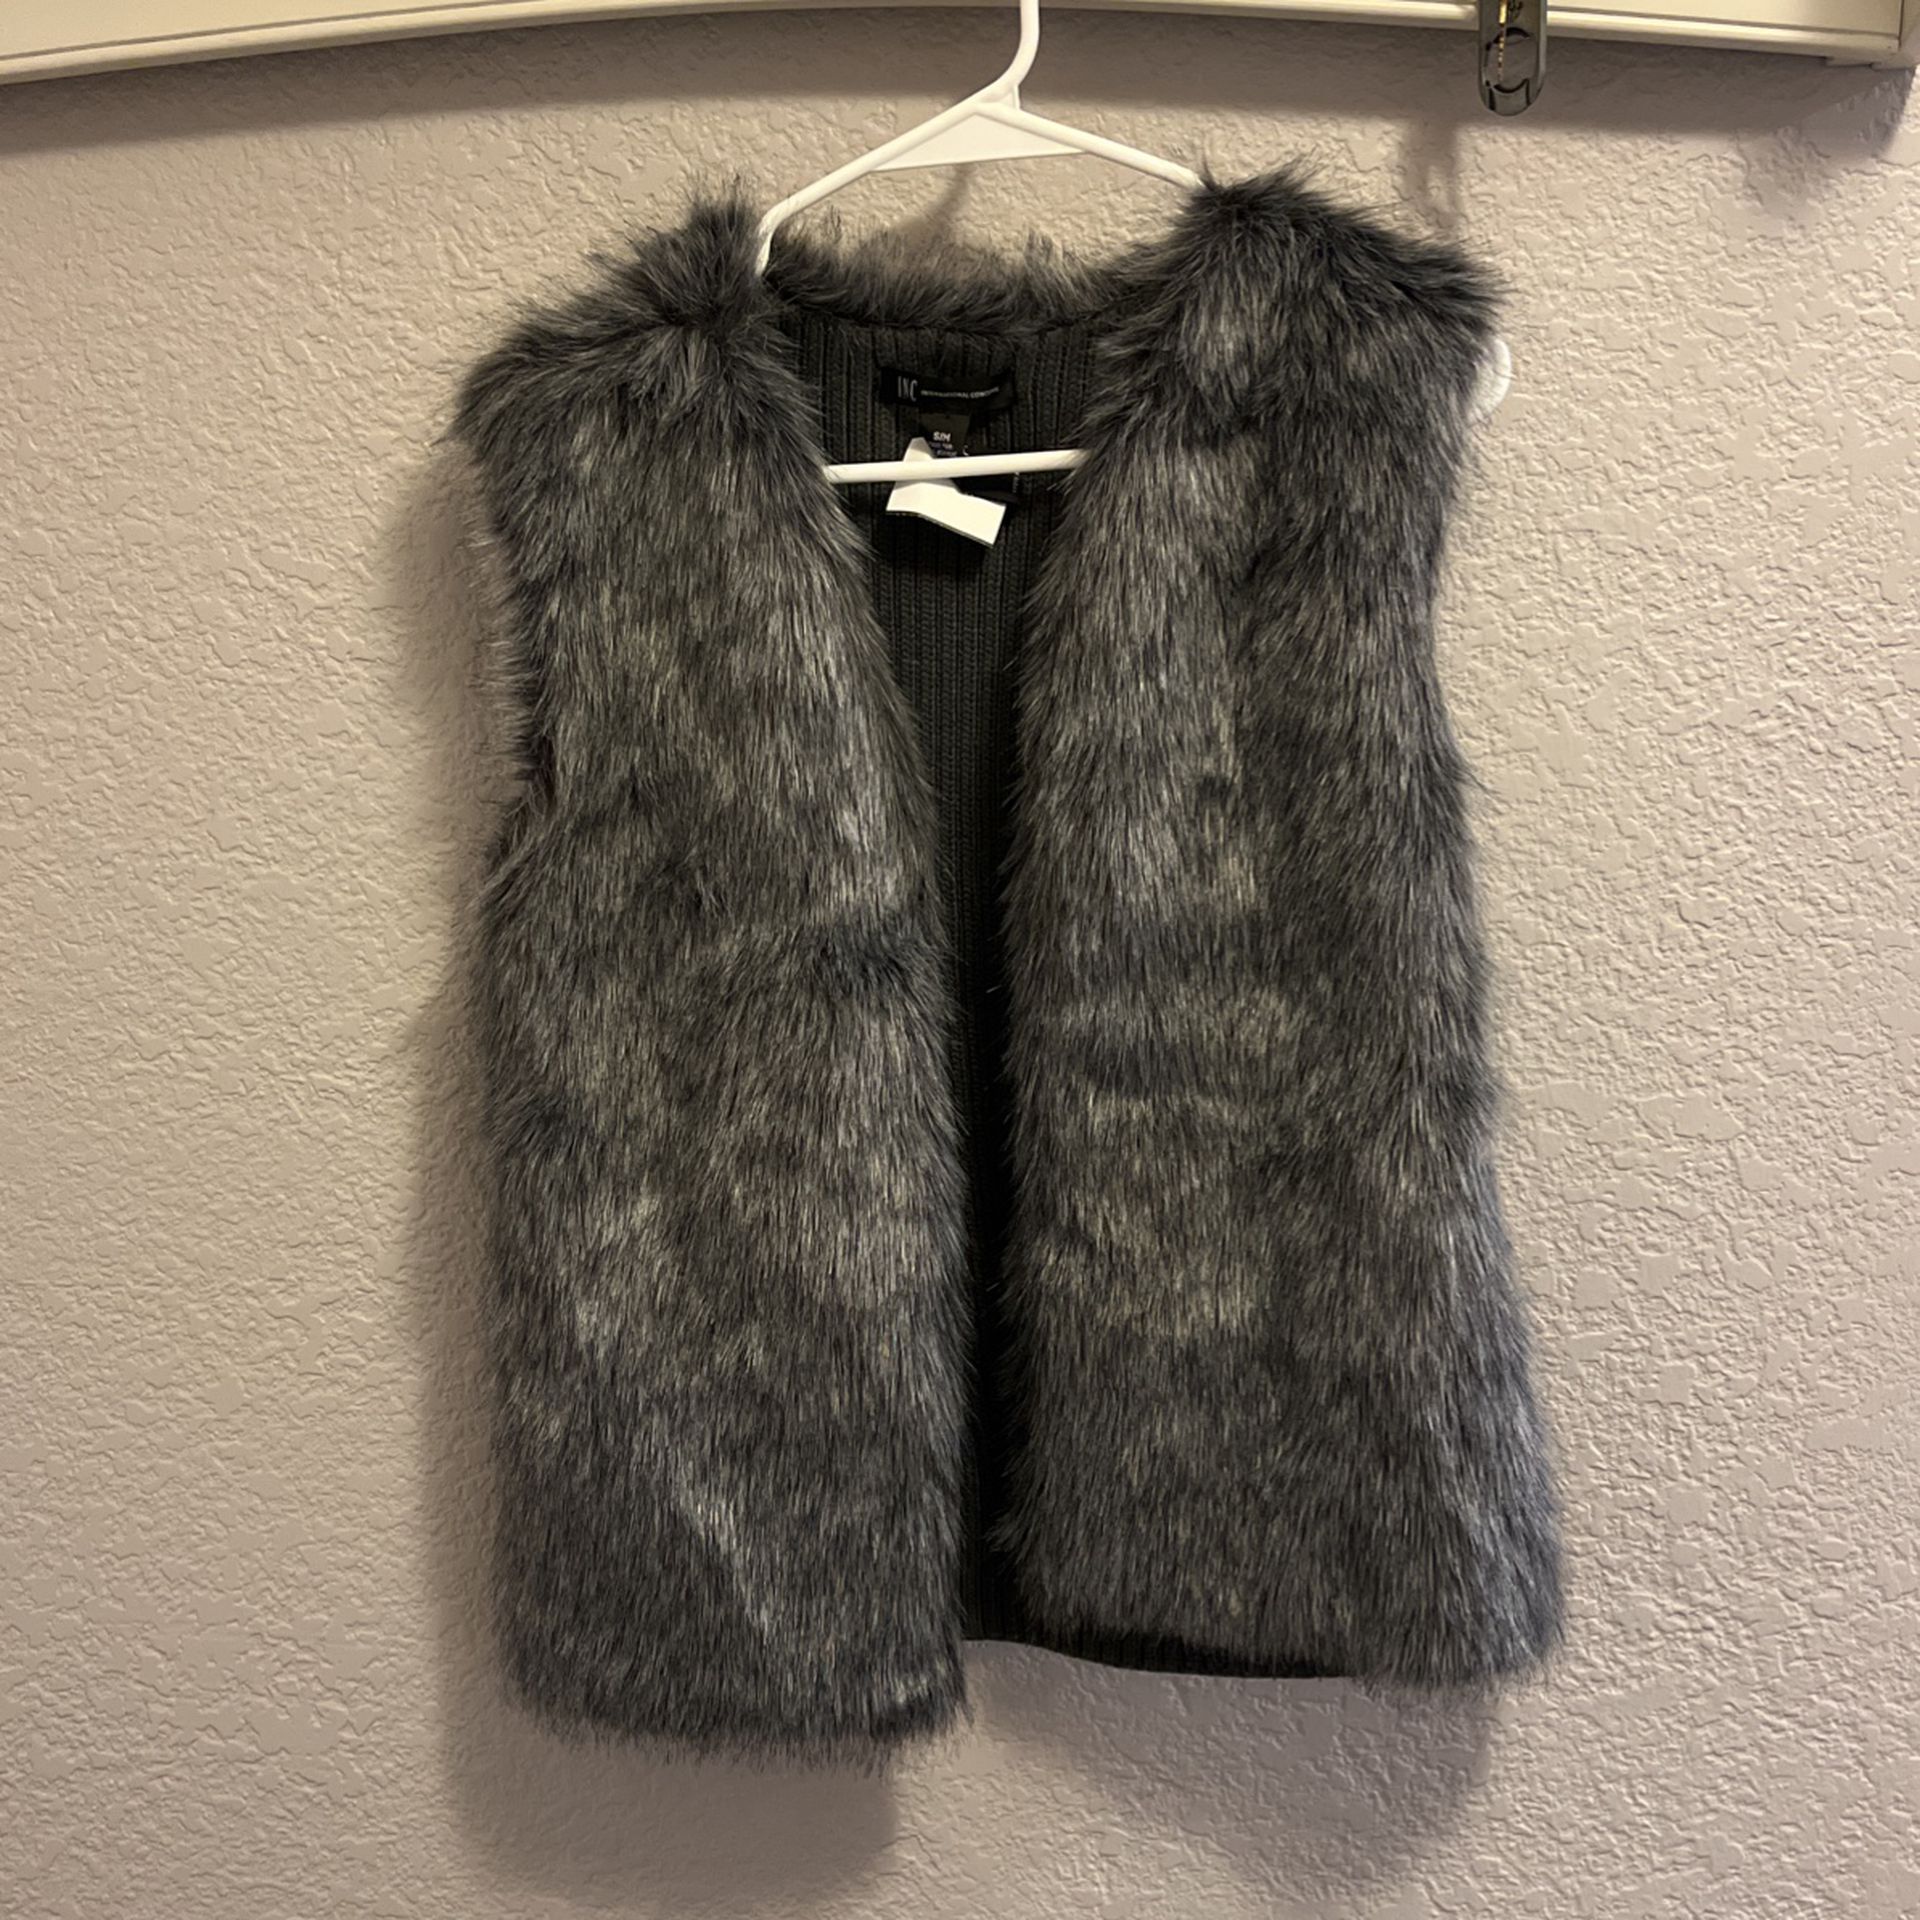 Inc. faux Fur Vest *Motivated Seller - Make an Offer*